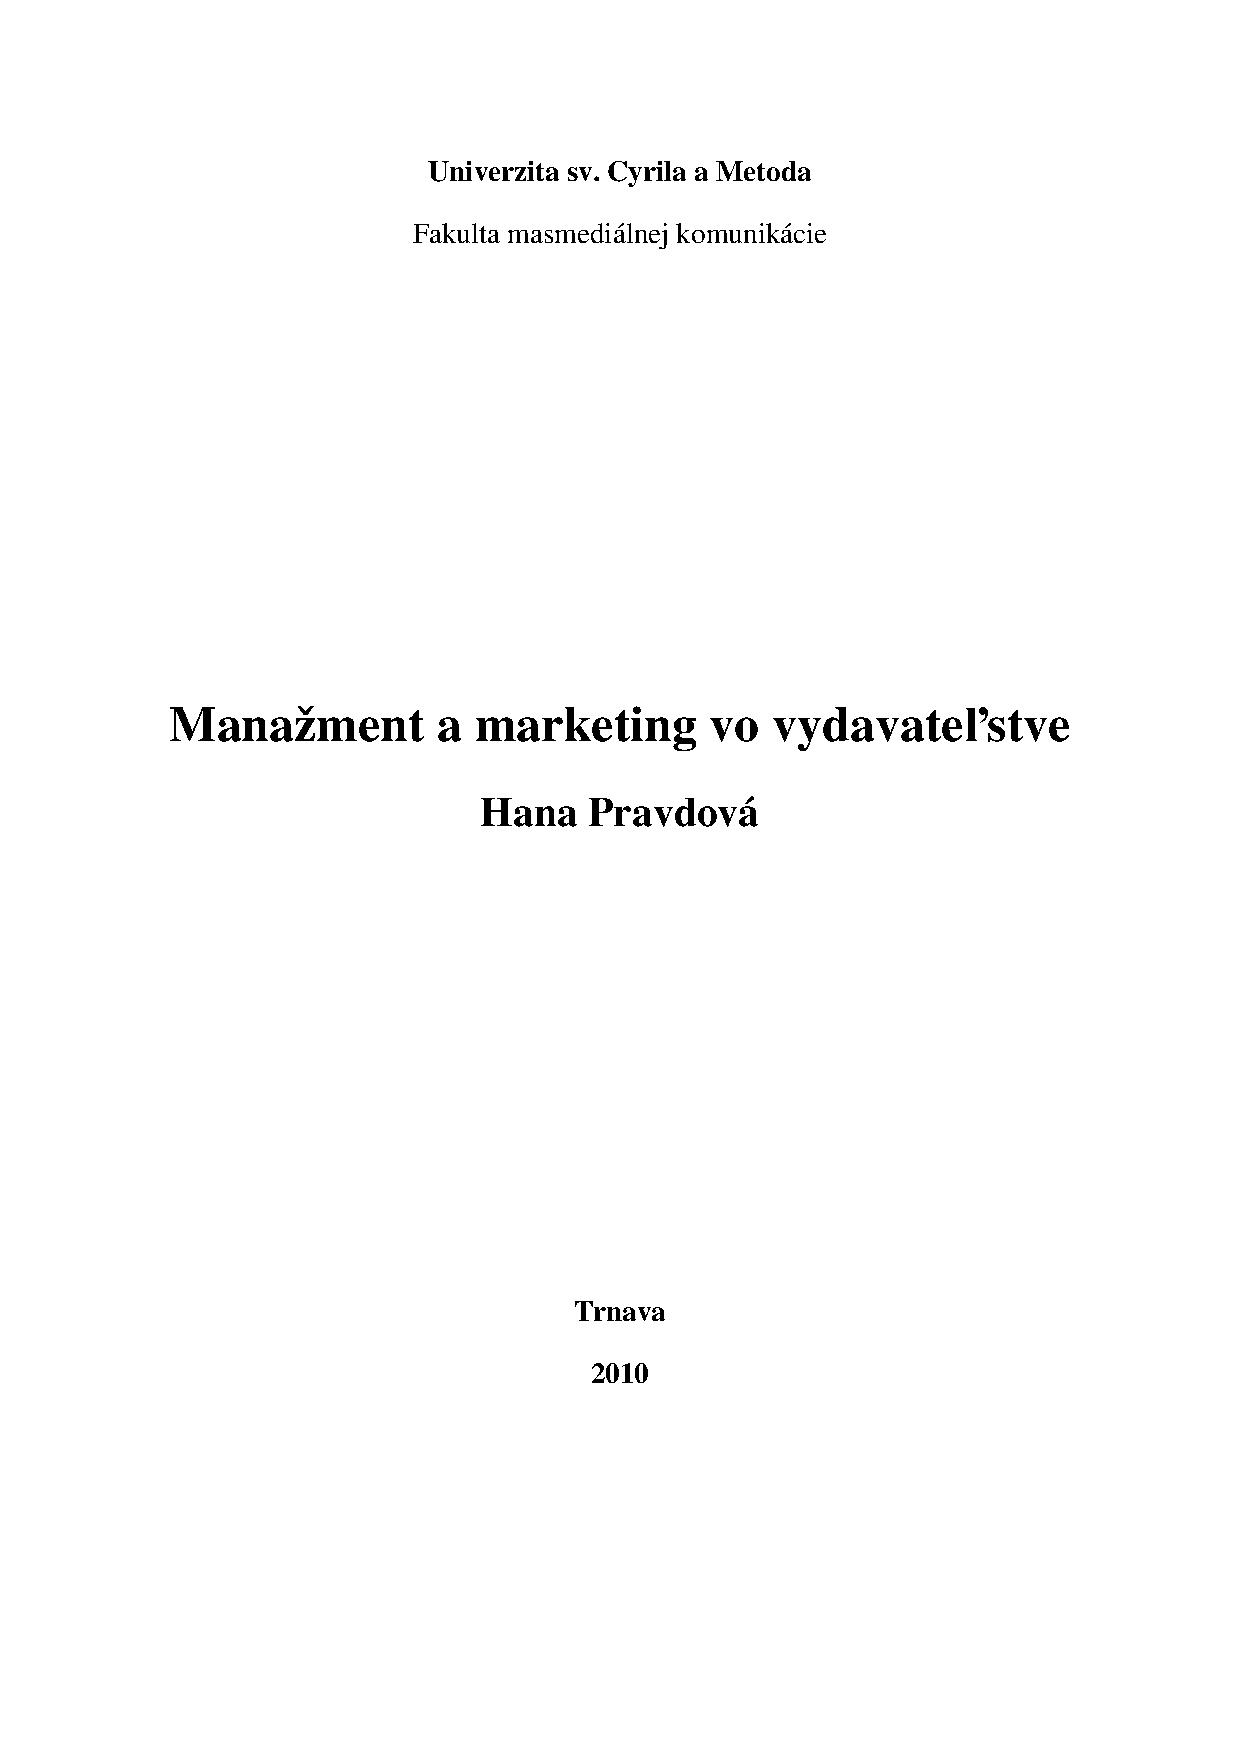 Manažment a marketing vo vydavateľstve